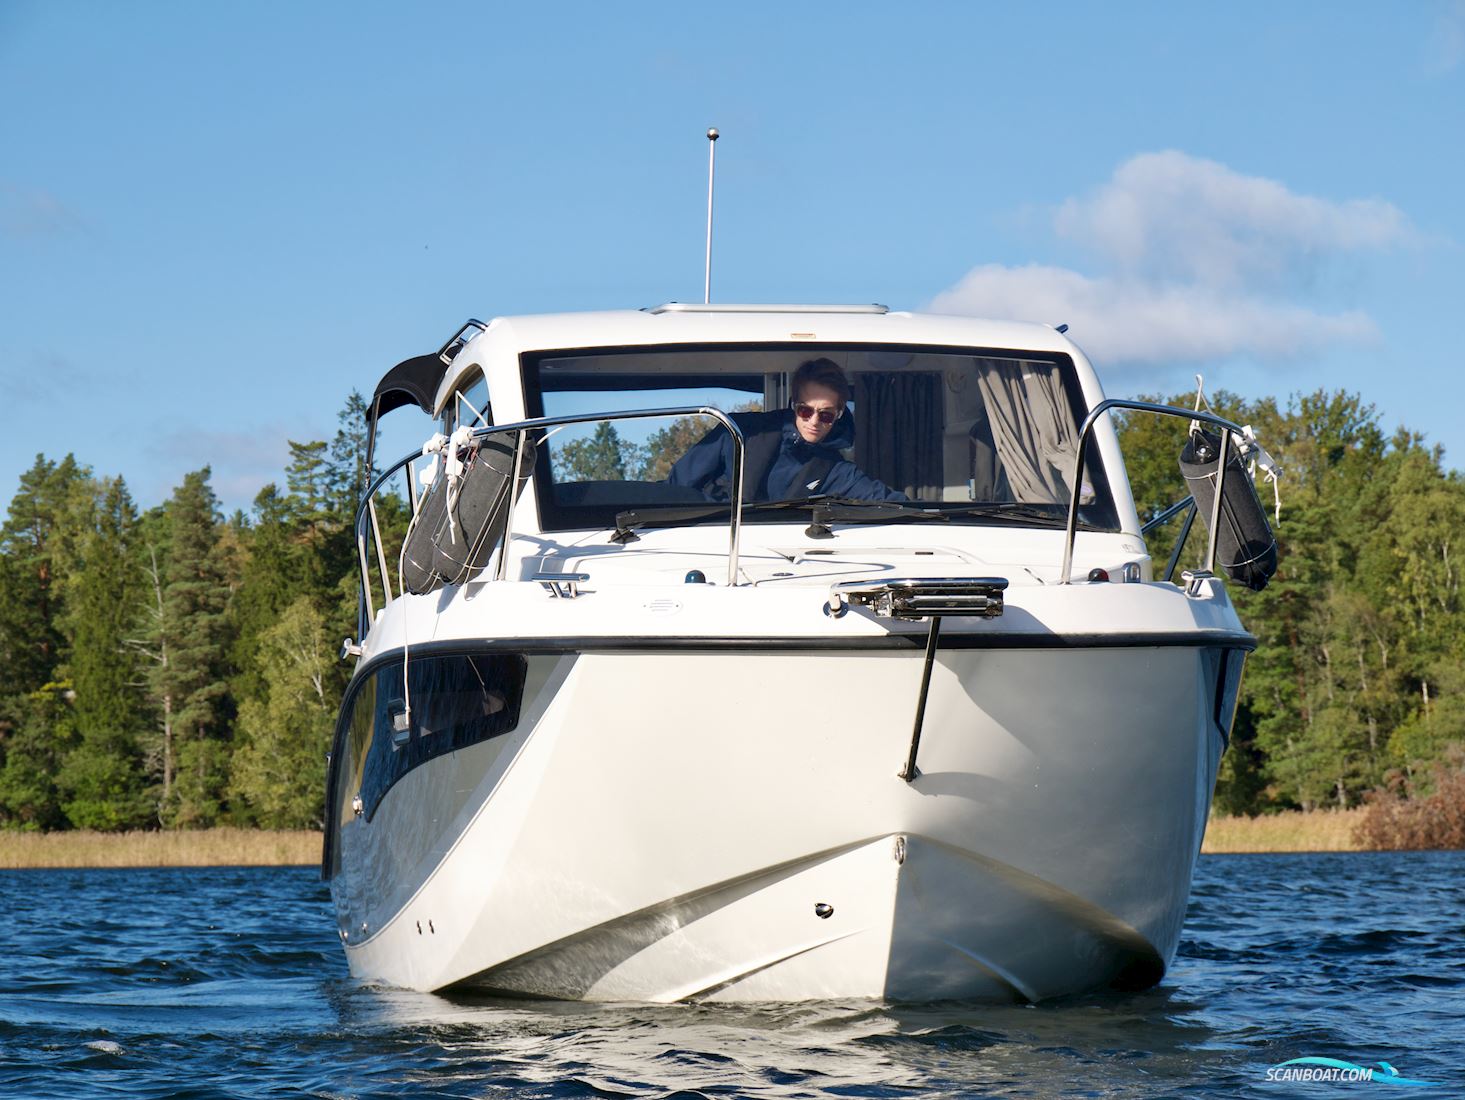 Uttern C77 Motorbåd 2016, med Mercury Verado 300 HK motor, Sverige